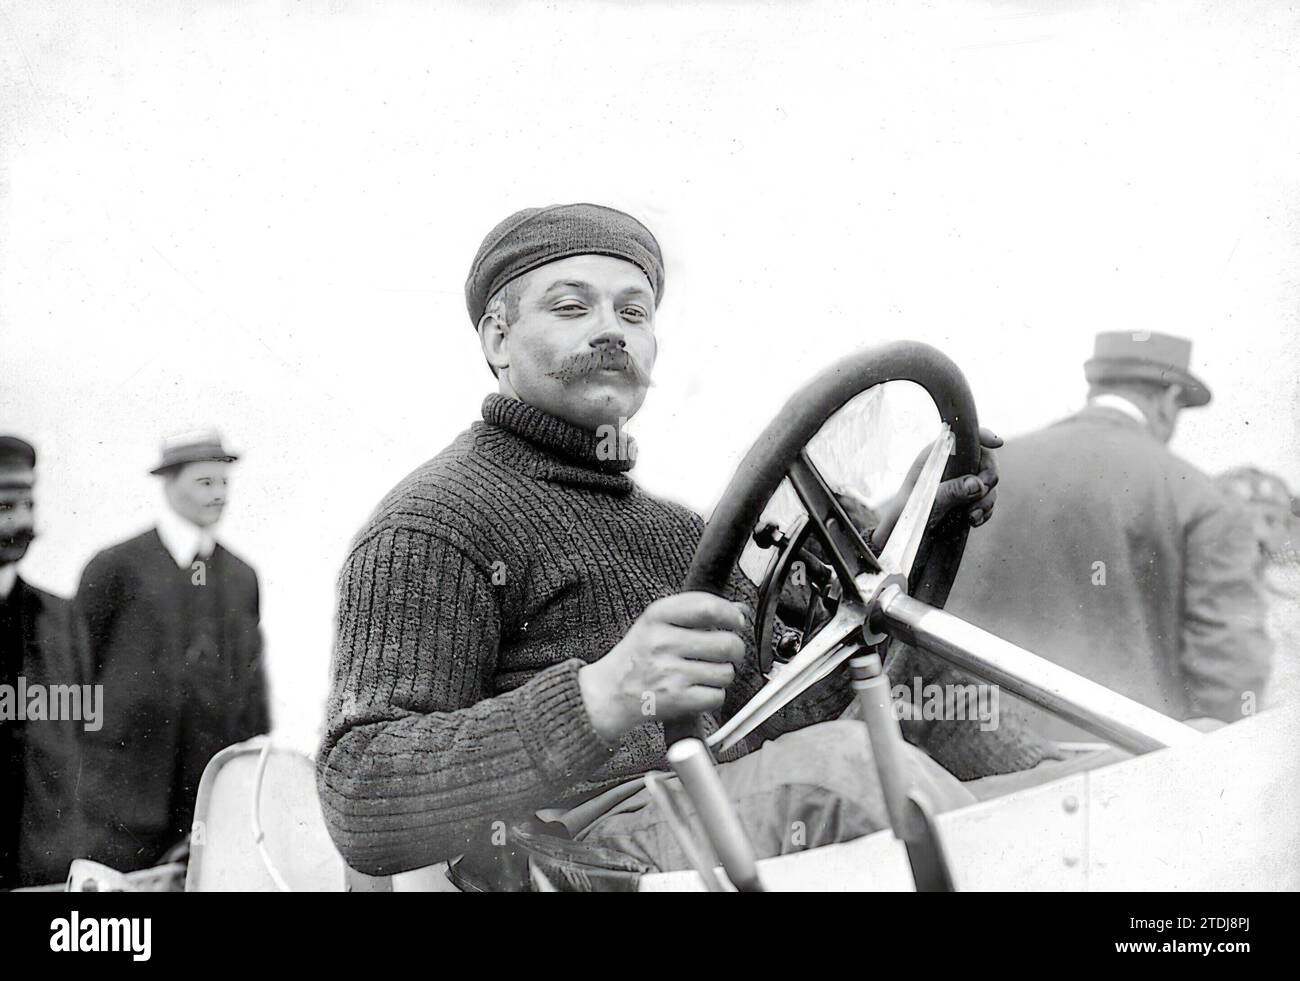 06/30/1908. Dieppe. La course automobile « Grand Prix ». Le vainqueur, l'automobiliste allemand Lautenschlager. Crédit : Album / Archivo ABC / M. Branger Banque D'Images